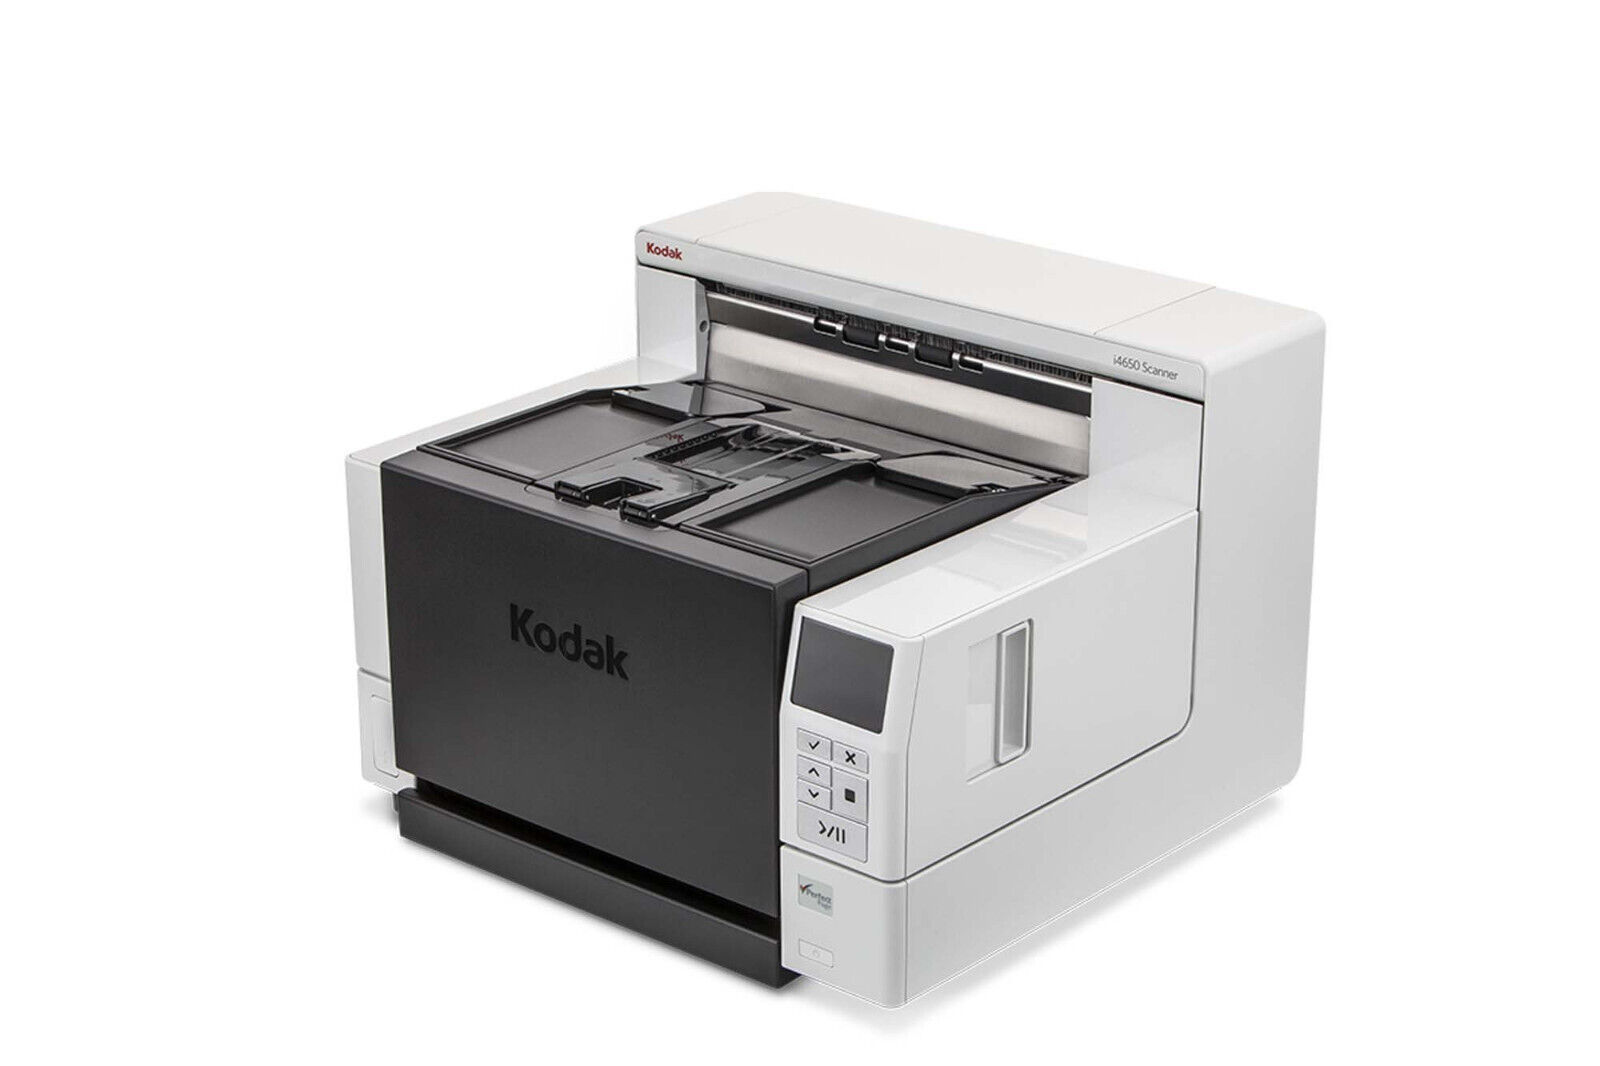 Kodak 1681006 i4250 High-Speed Document Scanner 110ppm 65K Scans day 500 feeder